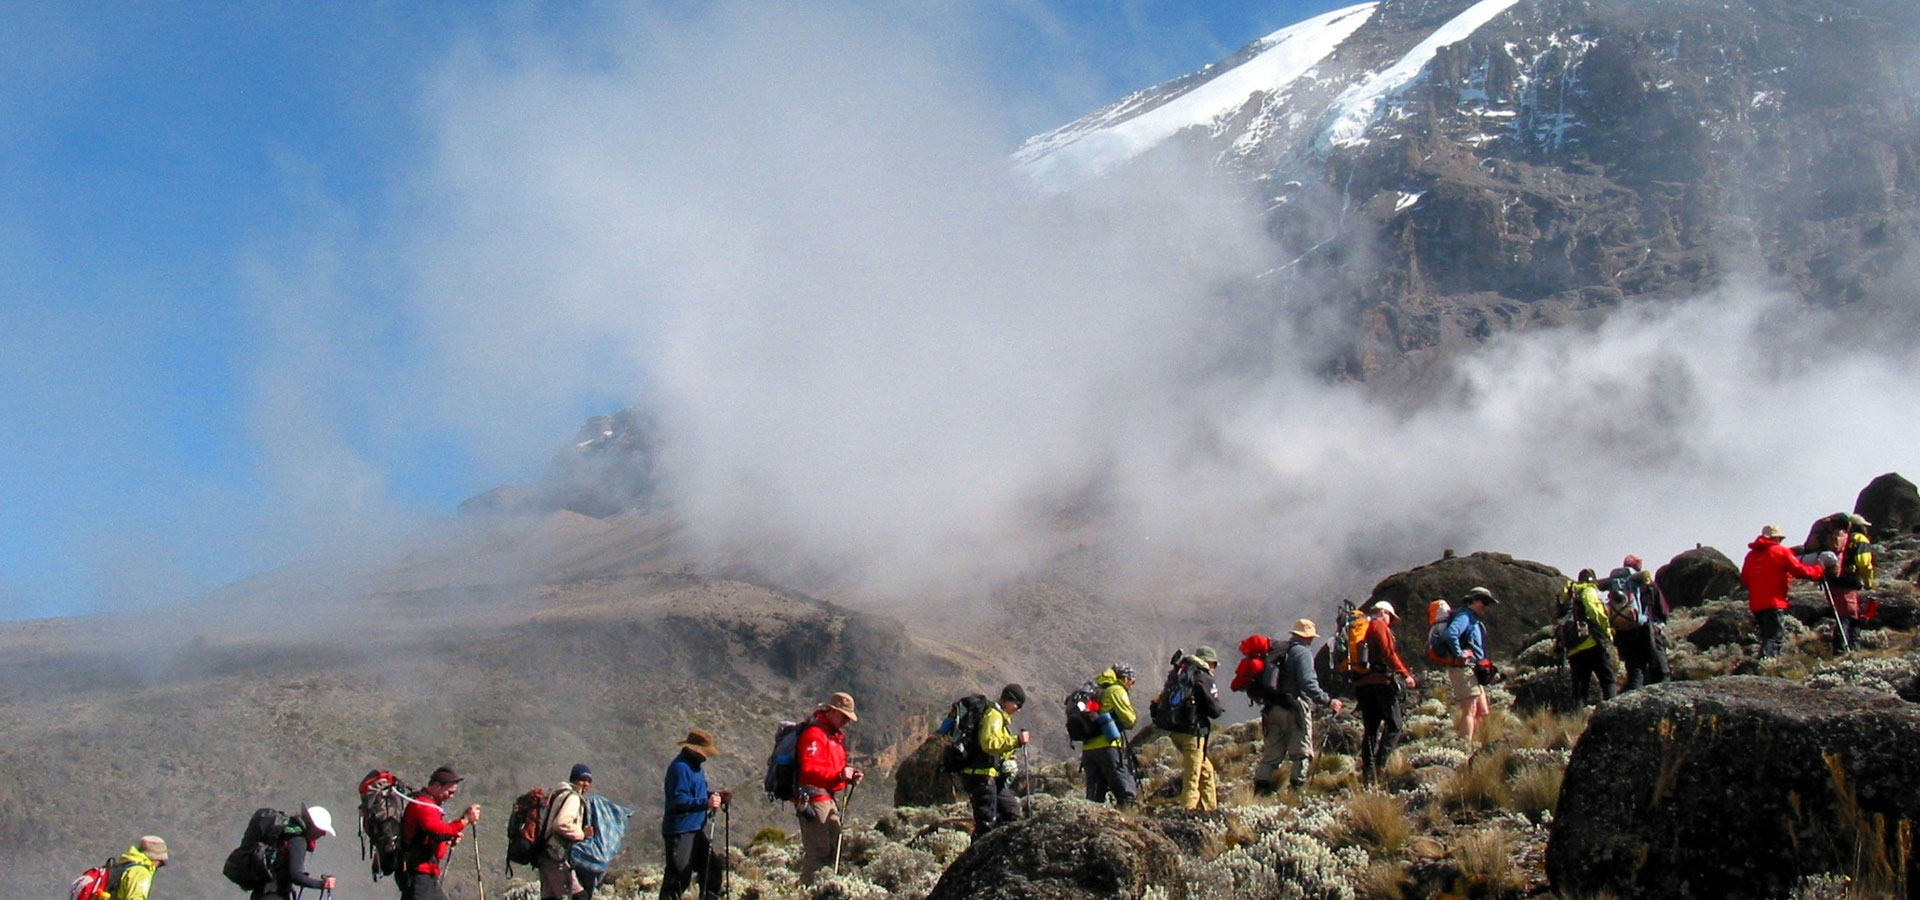 Climbing Mount Kilimanjaro Reviews